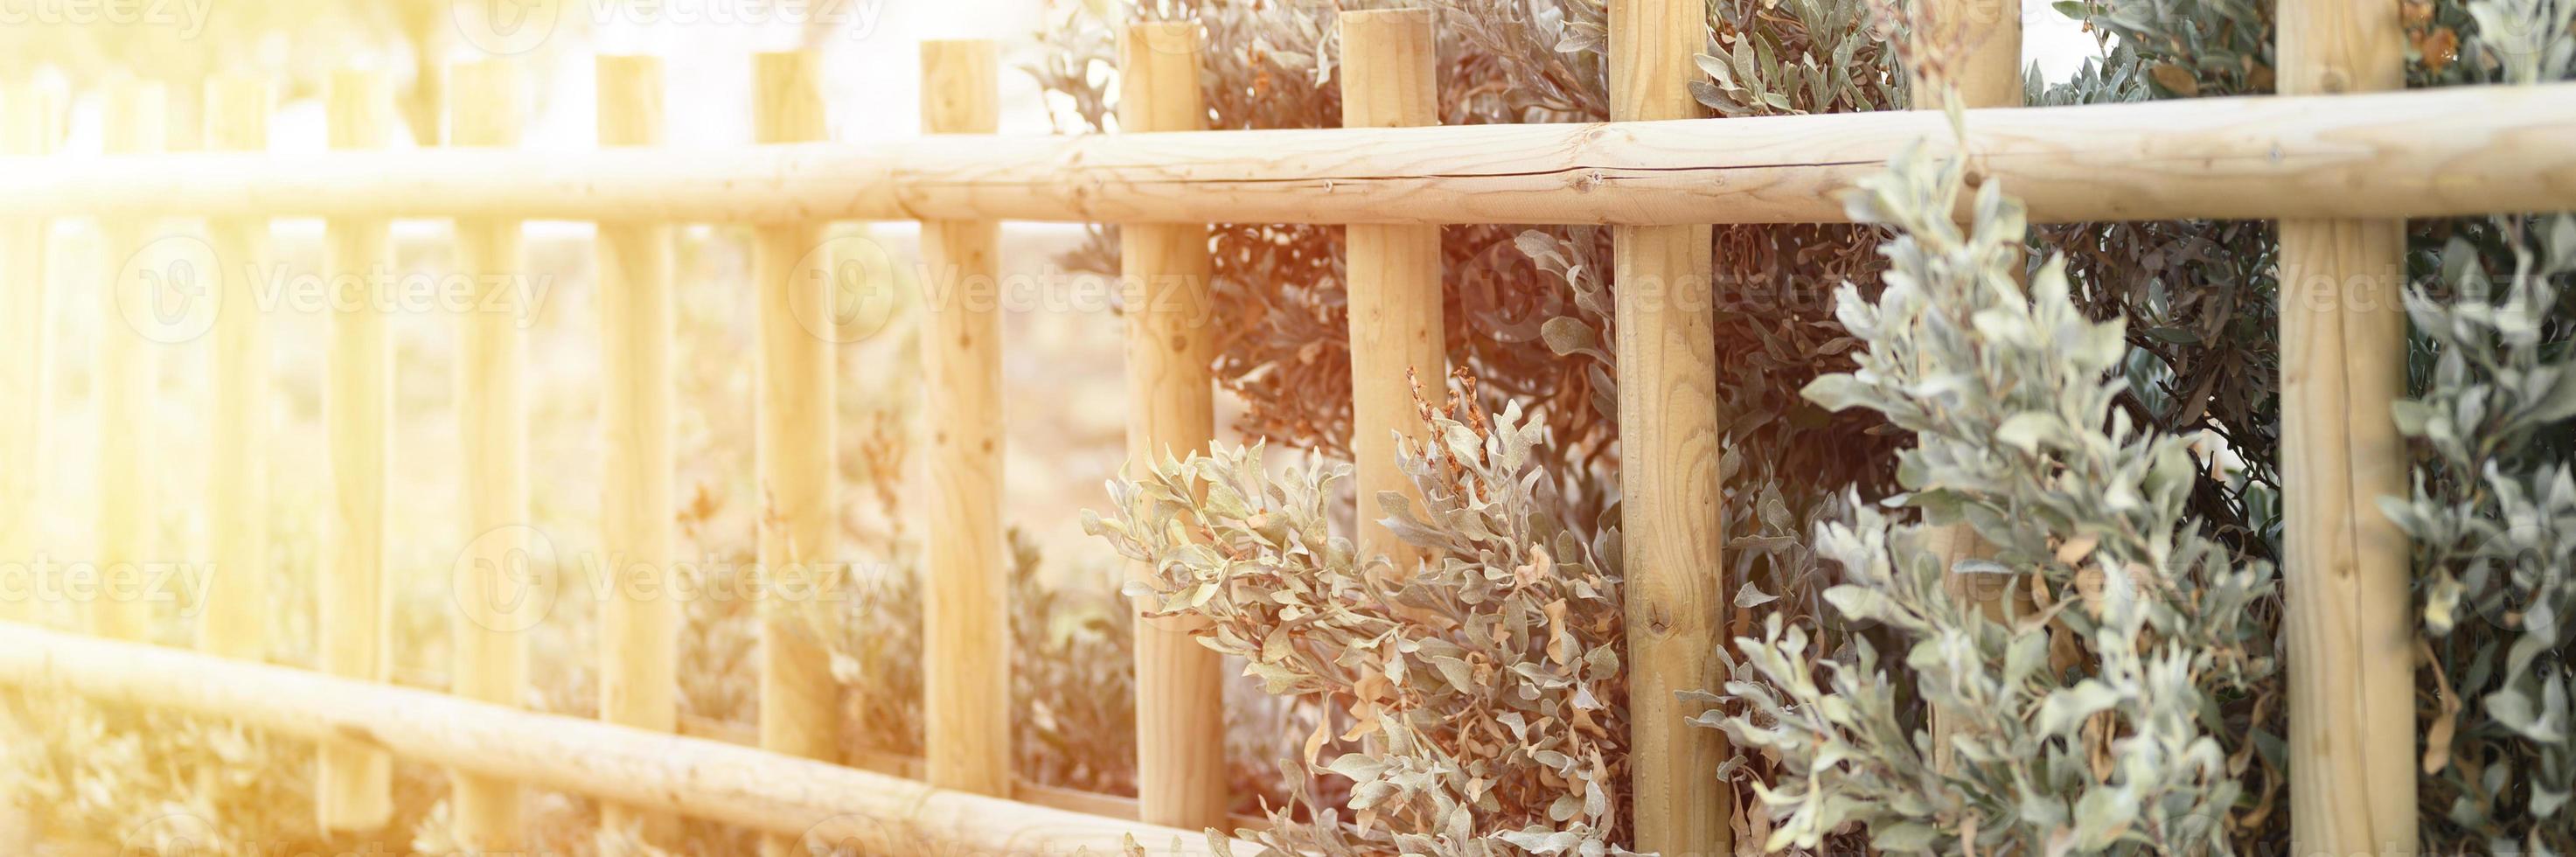 recinzione decorativa in legno e piante cespugli verdi bianche foto